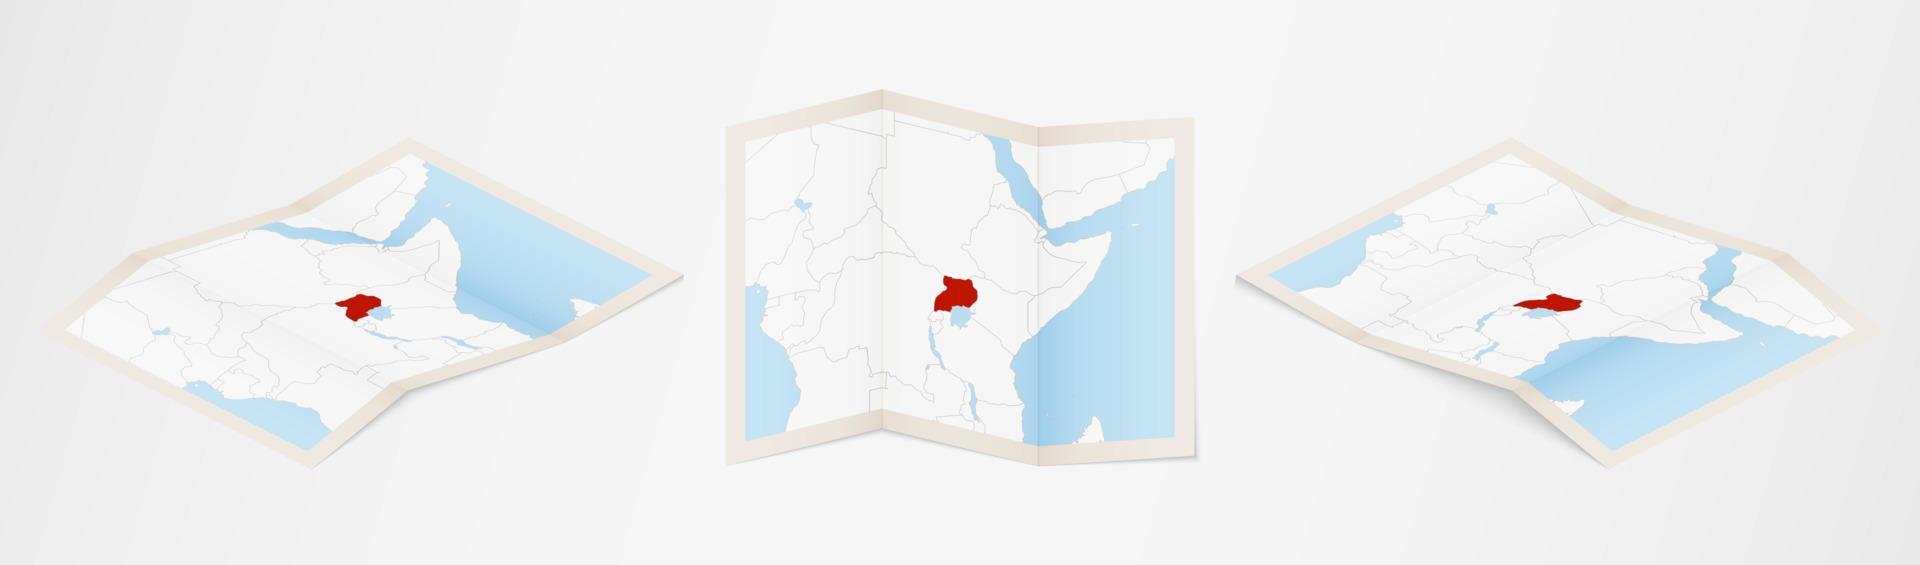 mapa dobrado de uganda em três versões diferentes. vetor